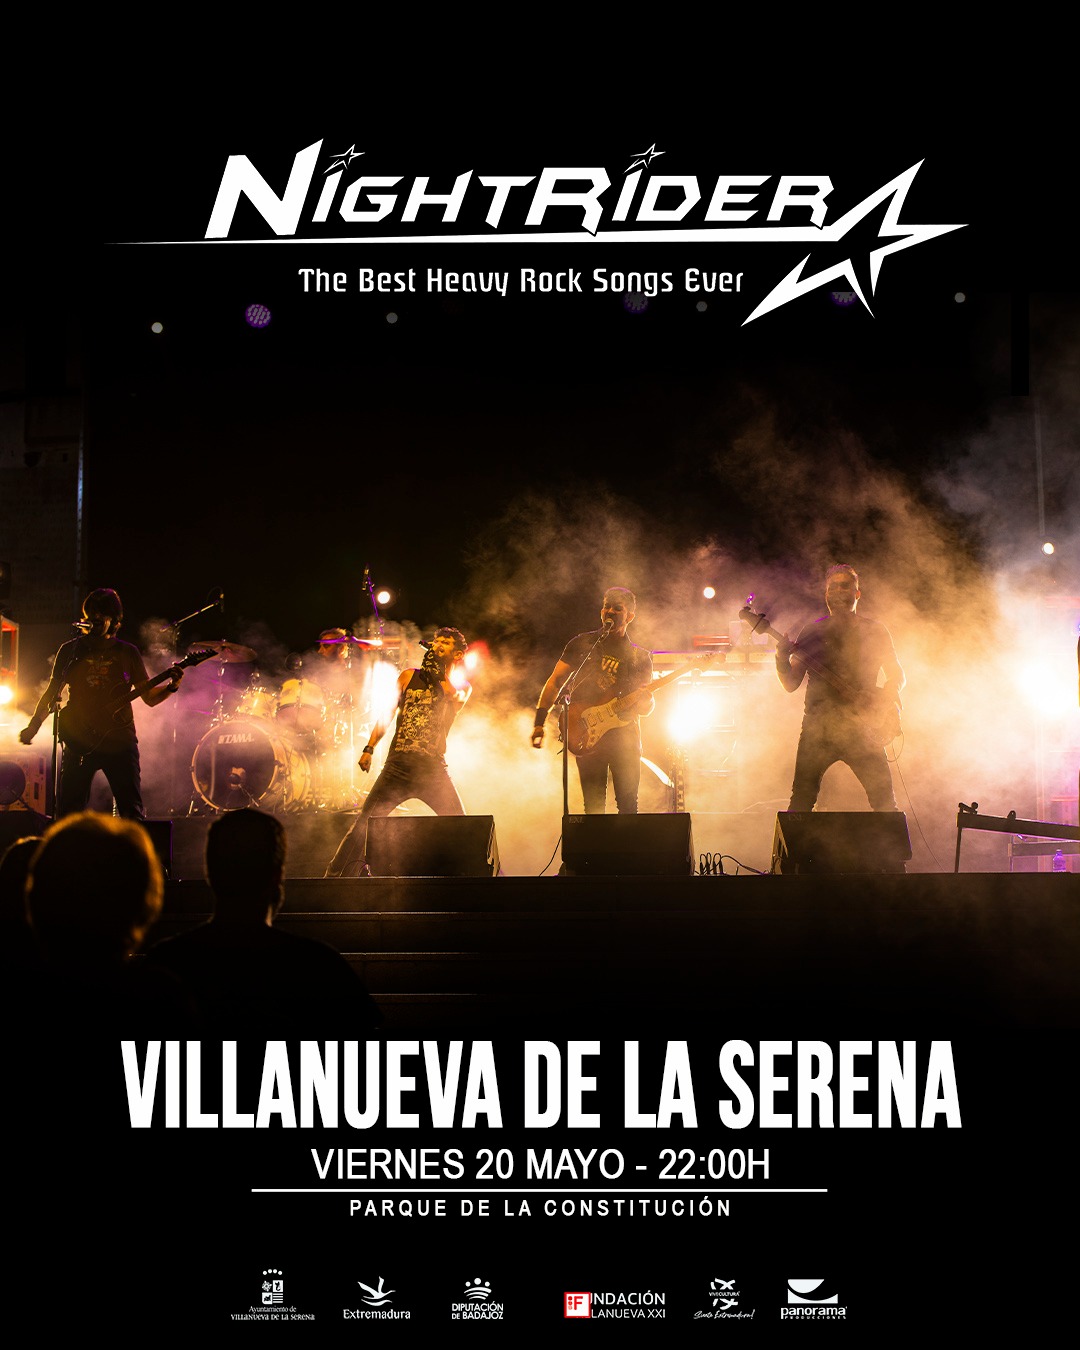 NIGHTRIDER LLEGA A VILLANUEVA DE LA SERENA (BADAJOZ)